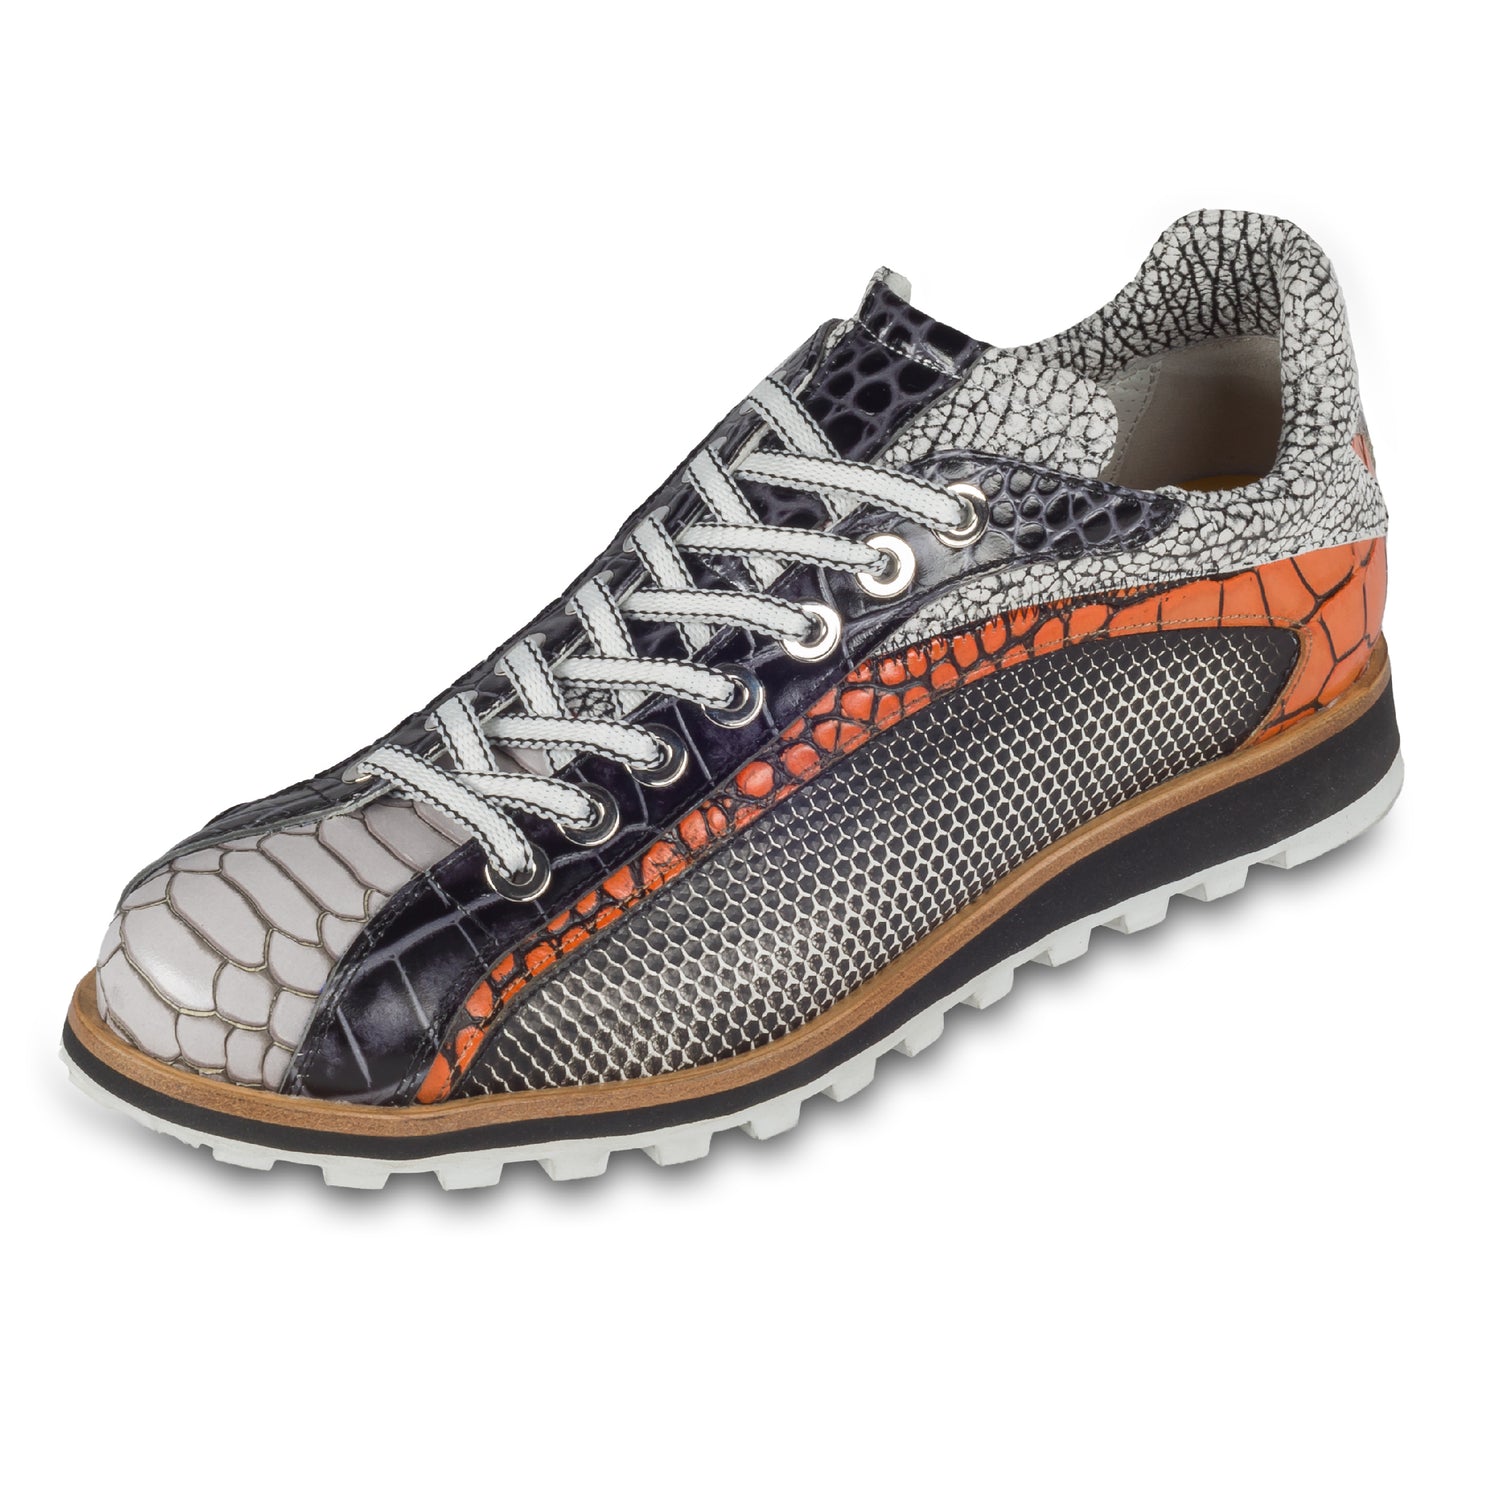 Lorenzi Herren Leder-Sneaker mit raffinierter Prägung in schwarz / weiß / orange. Handgefertigt. Schräge Ansicht linker Schuh. Schnürsenkel in weiß/schwarz.